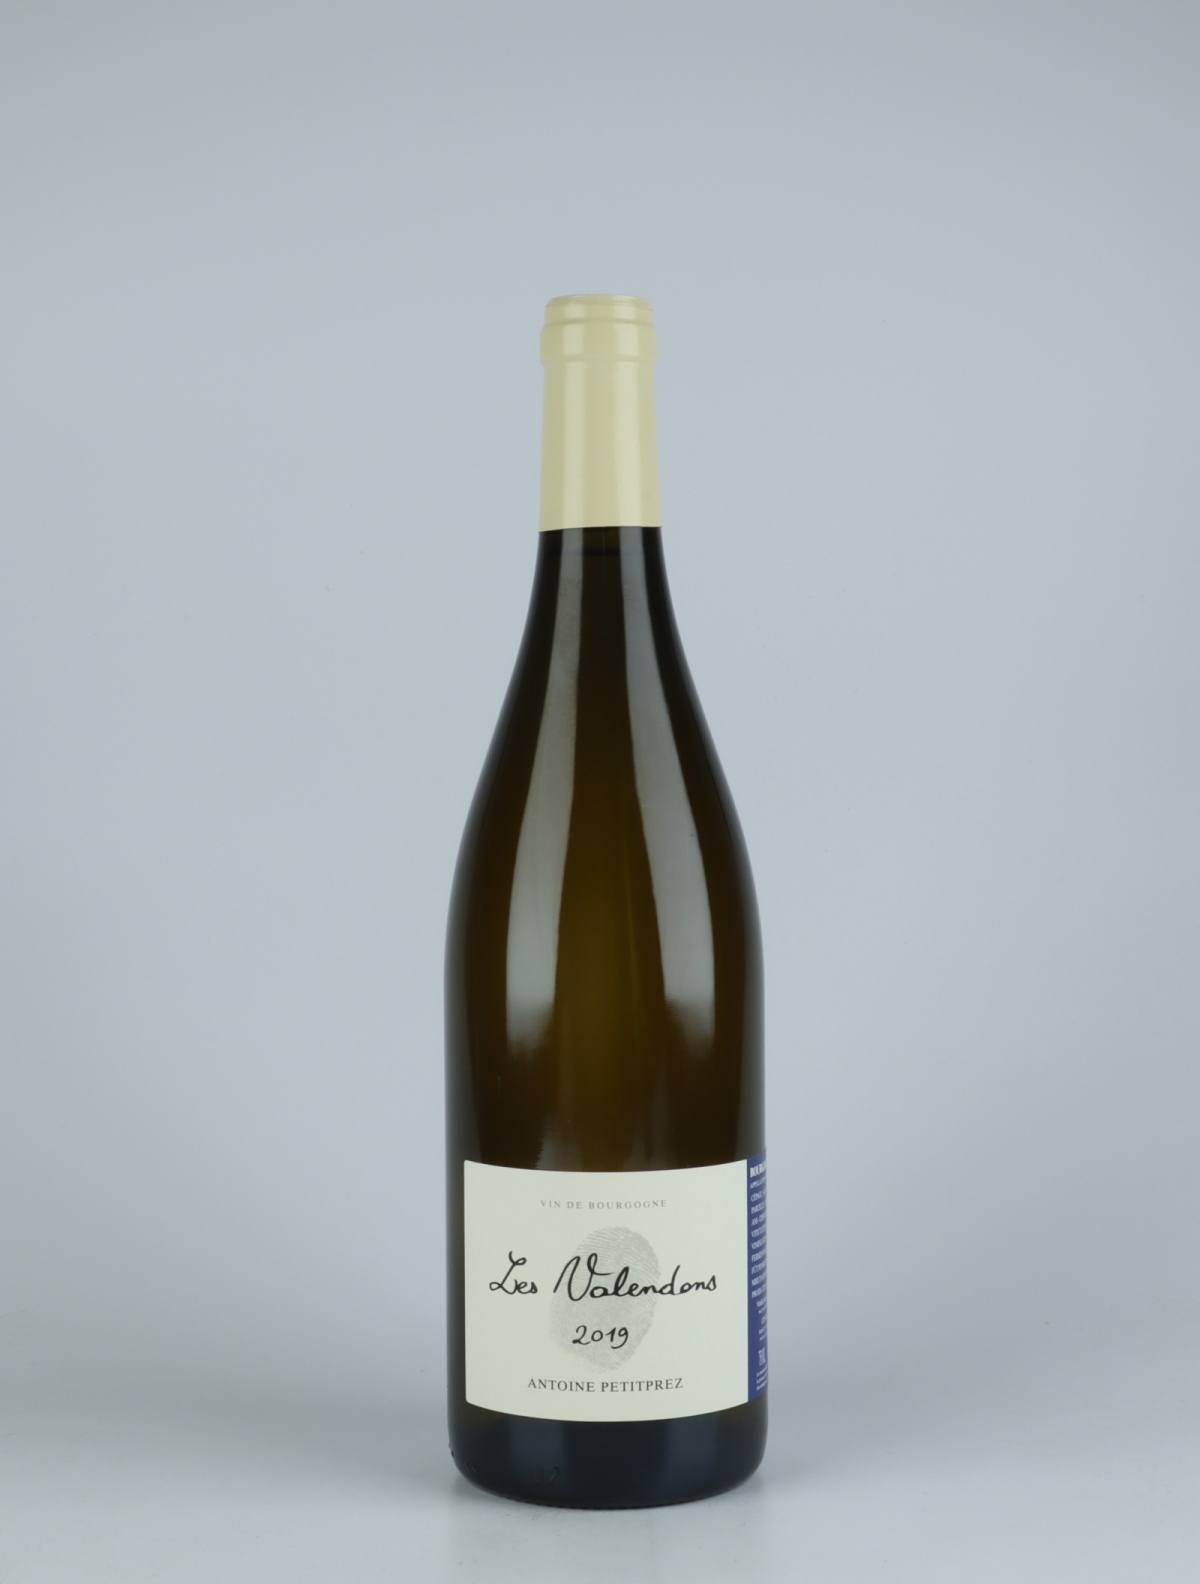 En flaske 2019 Bourgogne Aligoté - Les Valendons Hvidvin fra Antoine Petitprez, Bourgogne i Frankrig